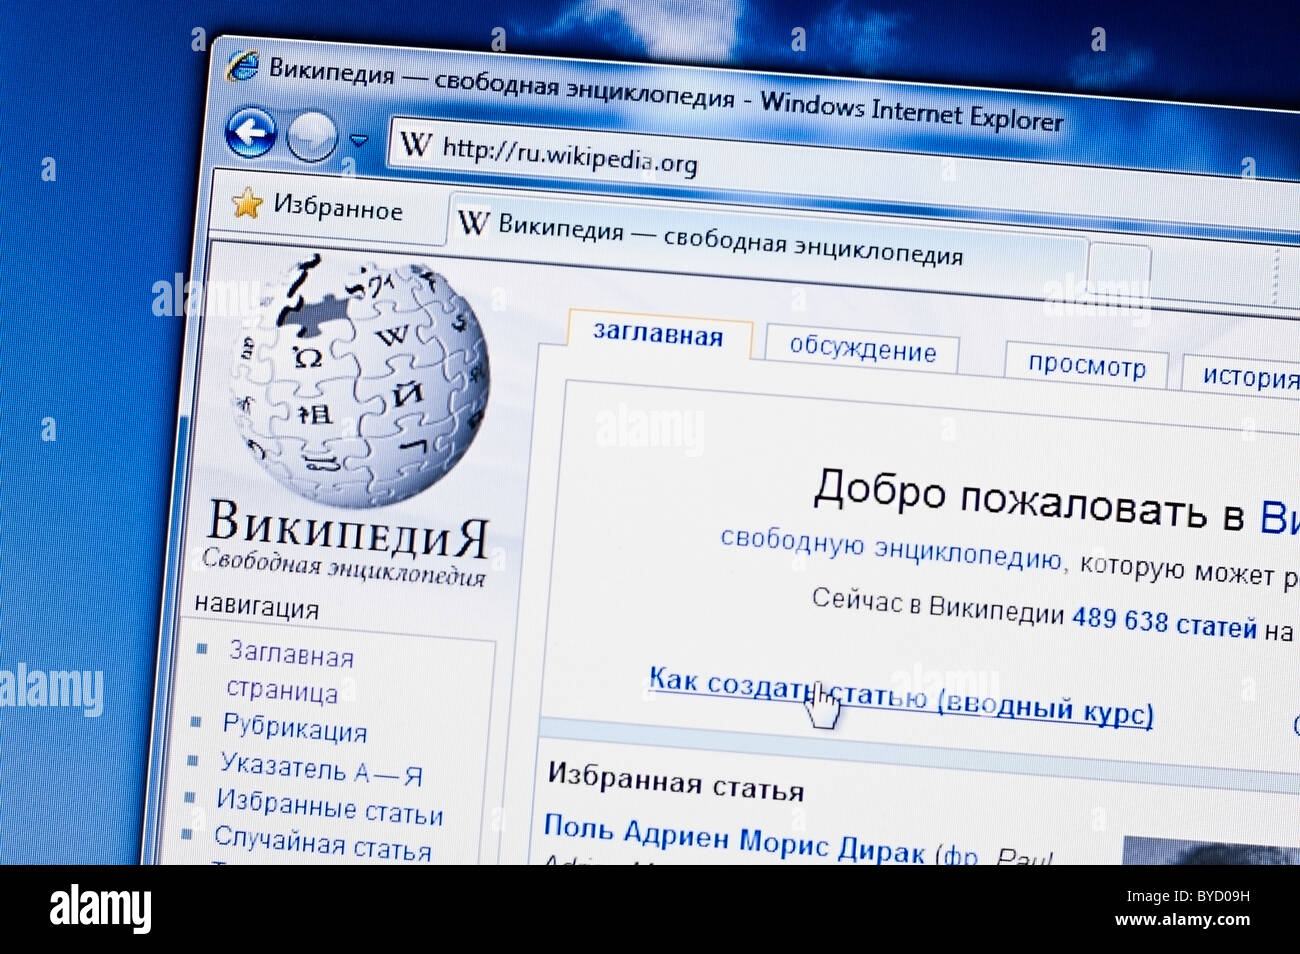 Https ru wikipedia org wiki википедия. Википедия. Интернет энциклопедия это. Википедия энциклопедия. Wiki.